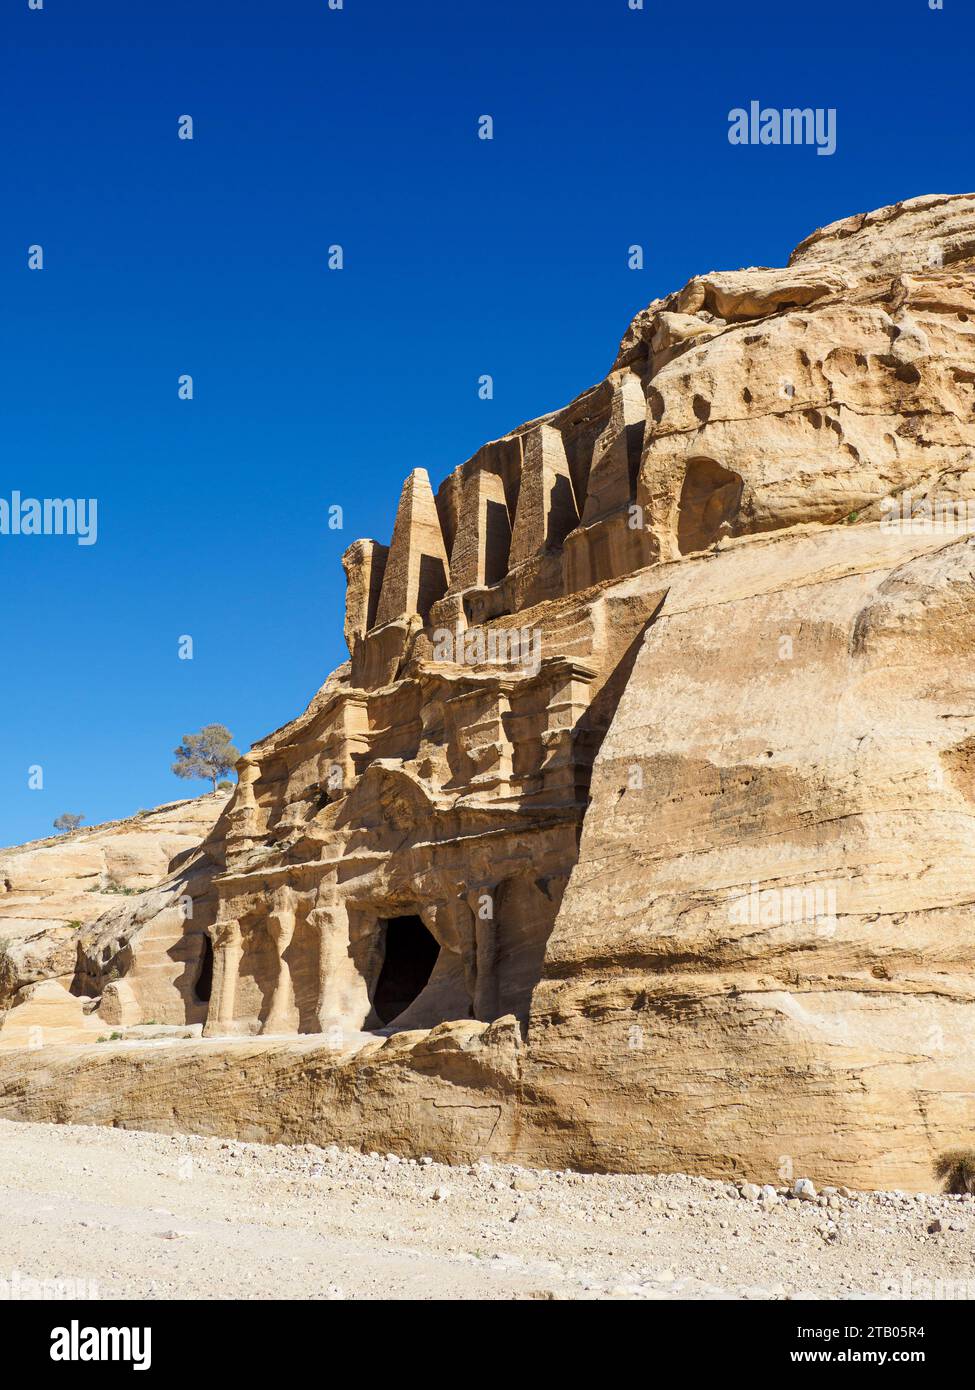 La tomba dell'Obelisco, il parco archeologico di Petra, un sito patrimonio dell'umanità dell'UNESCO, 7 nuove meraviglie del mondo, Giordania. Foto Stock